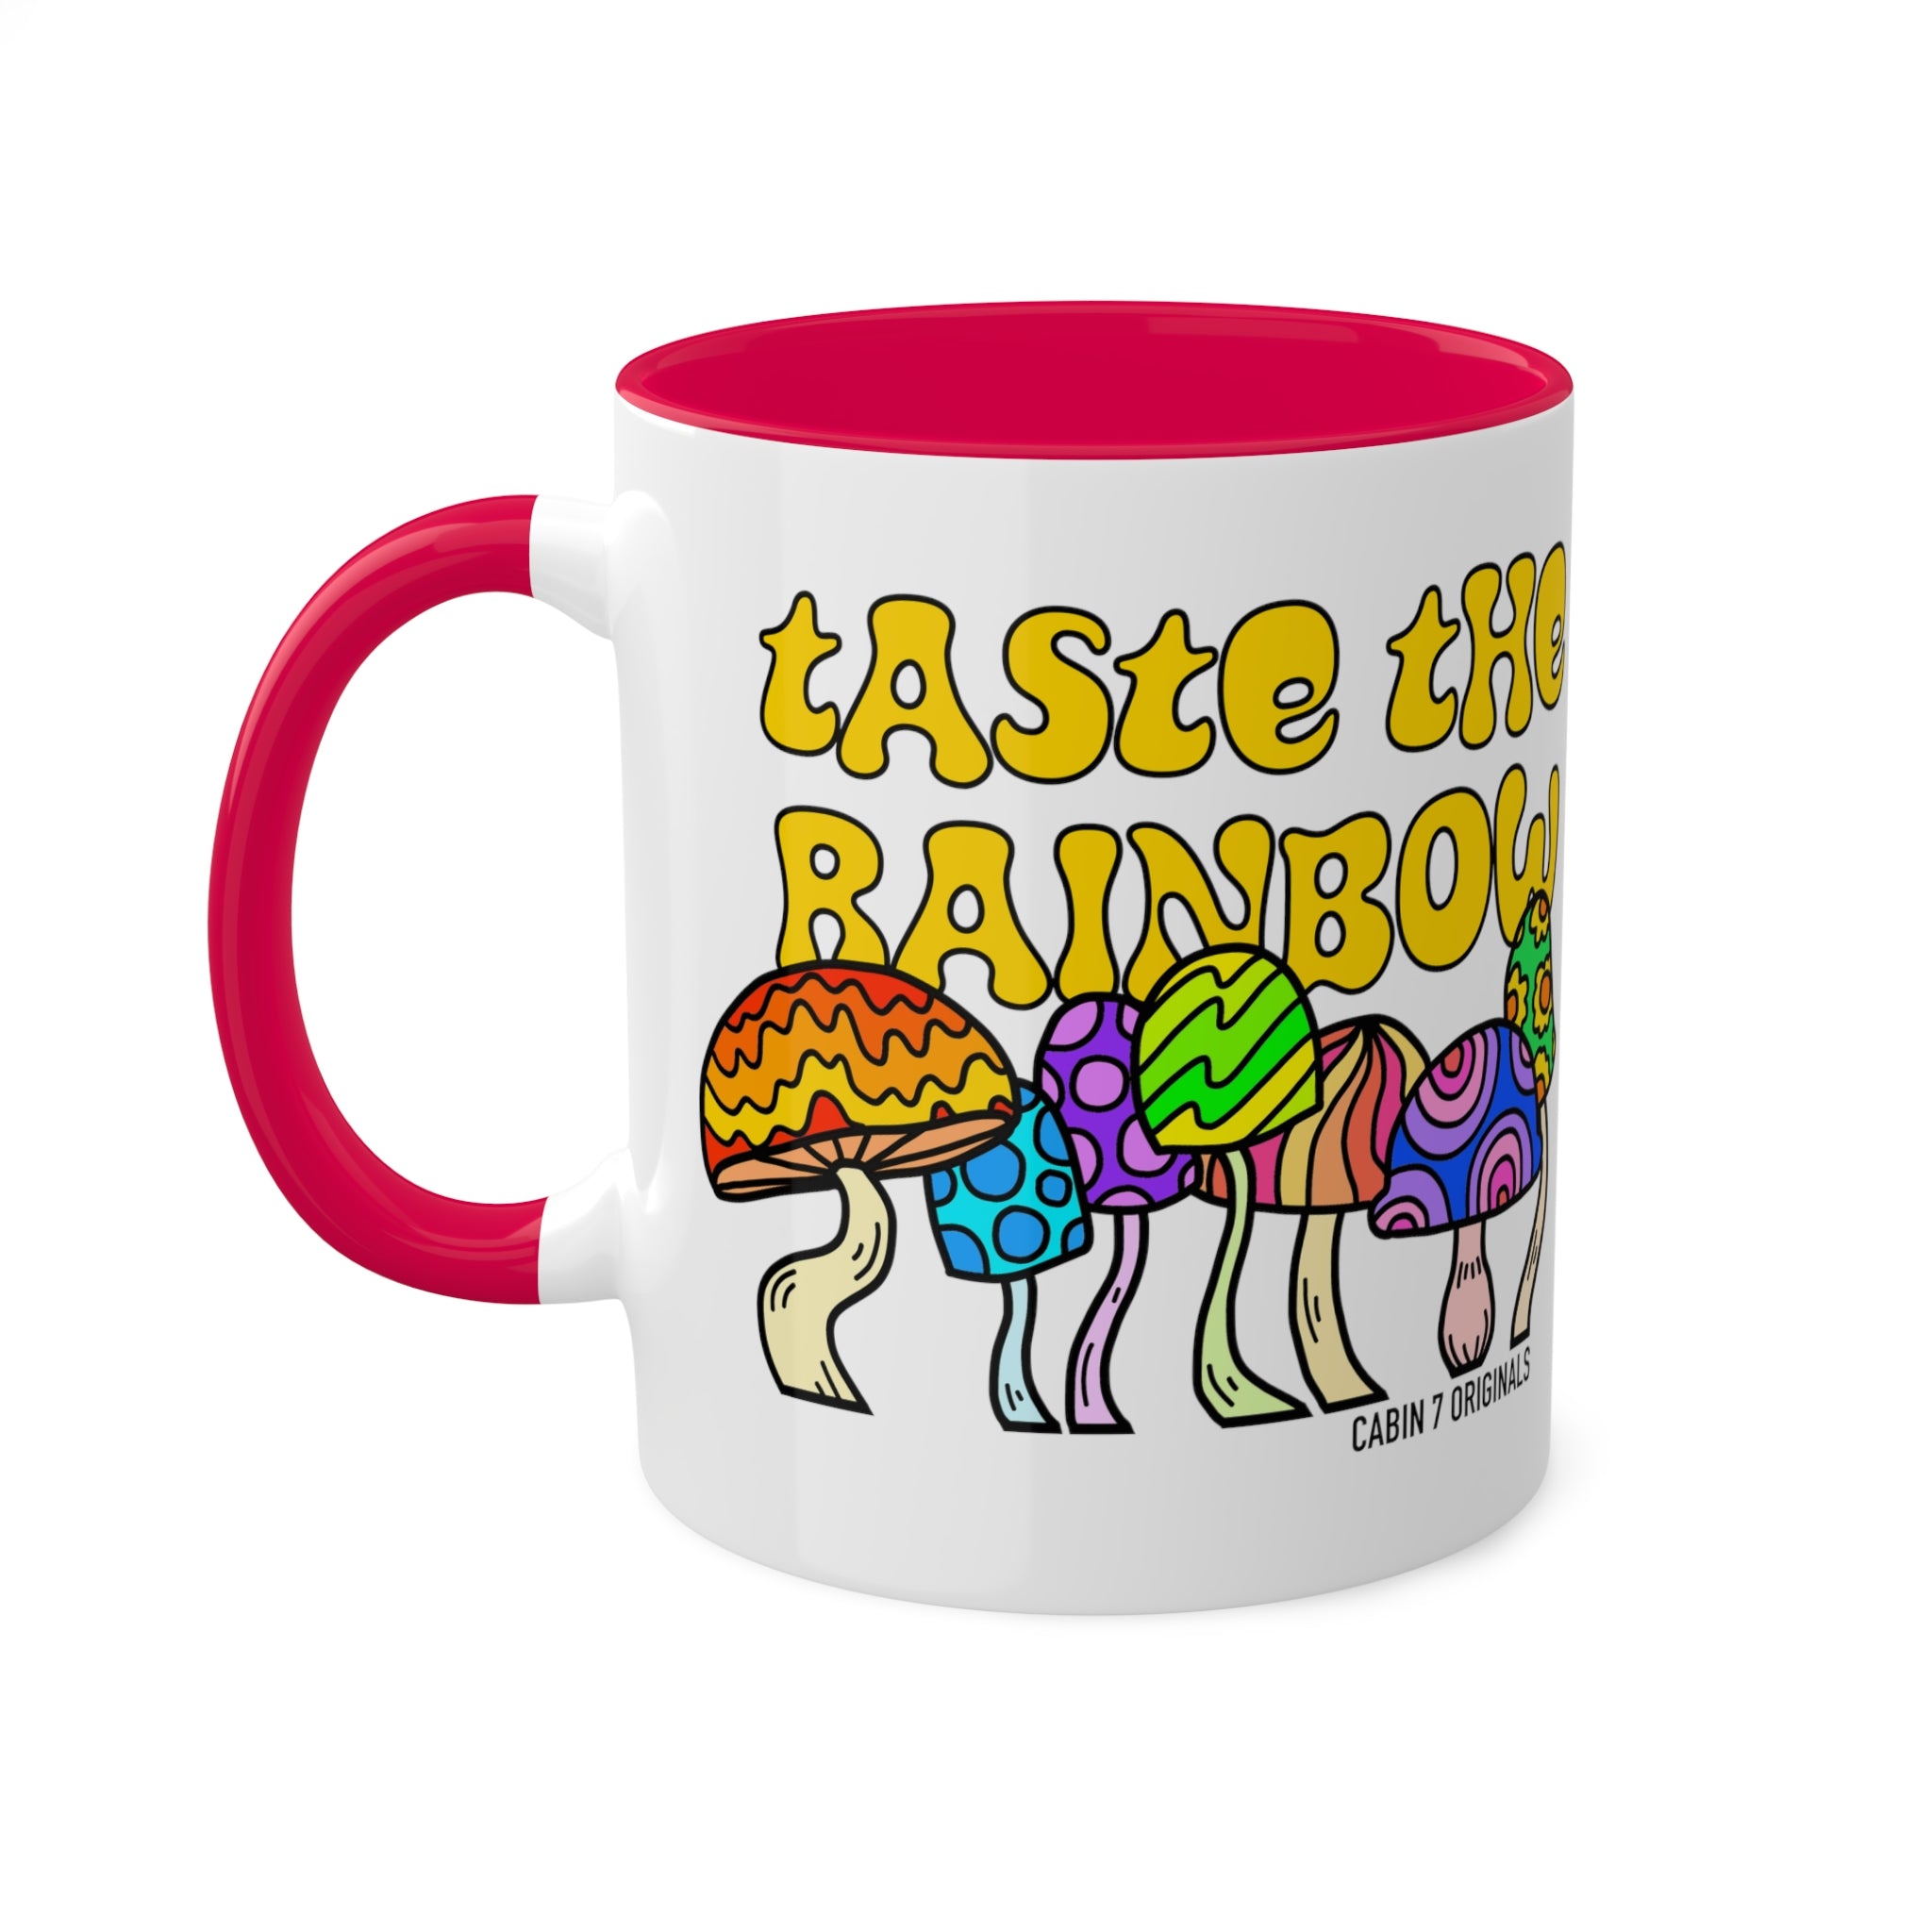 Taste The Rainbow Mug